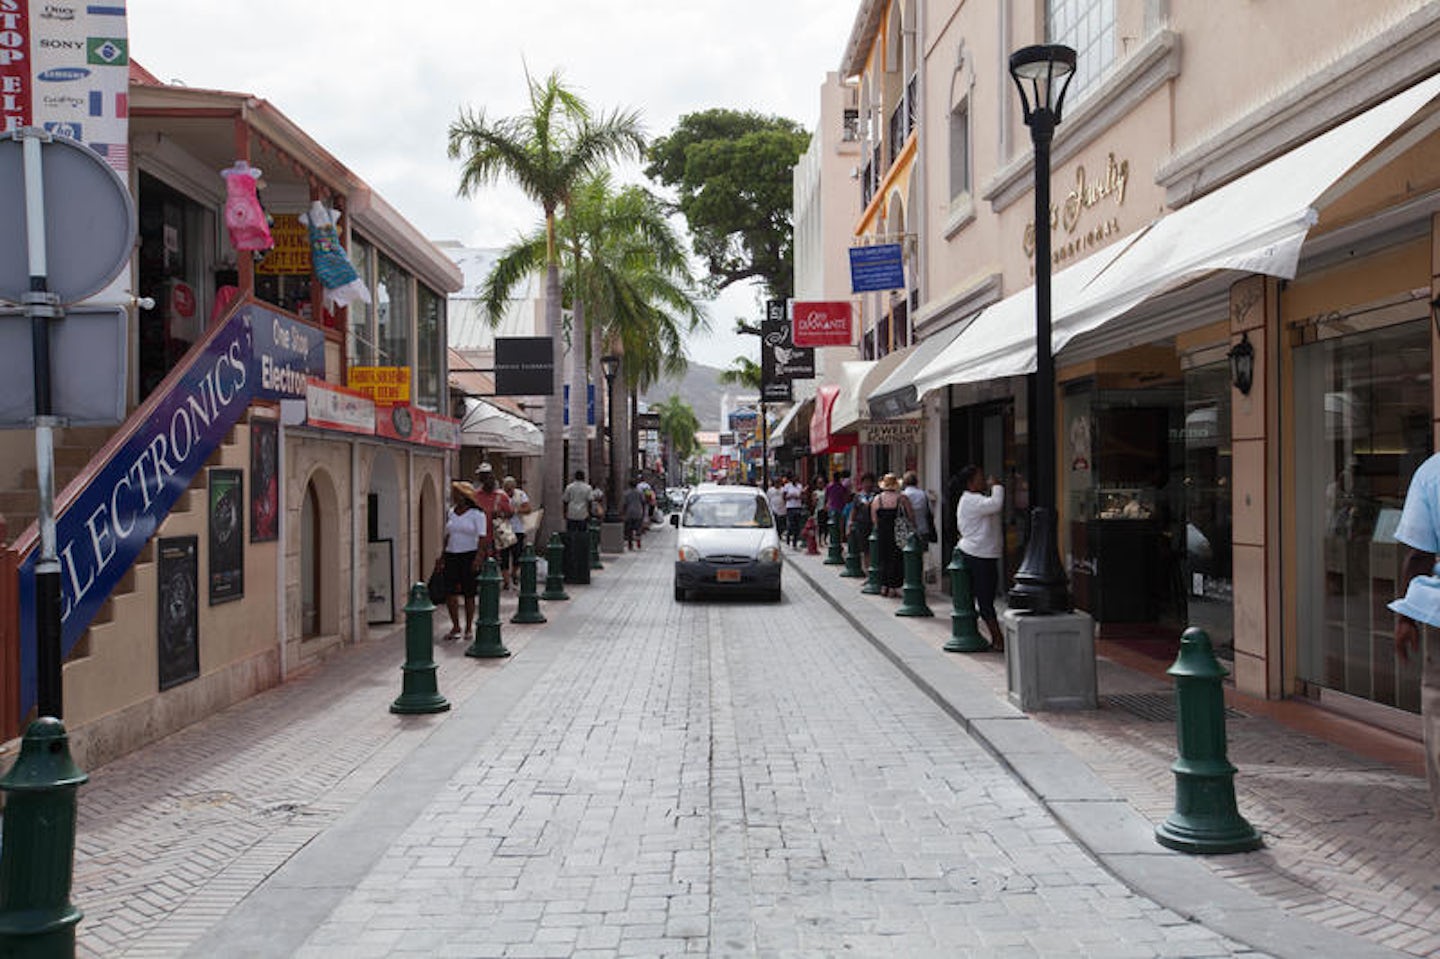 St. Maarten Port